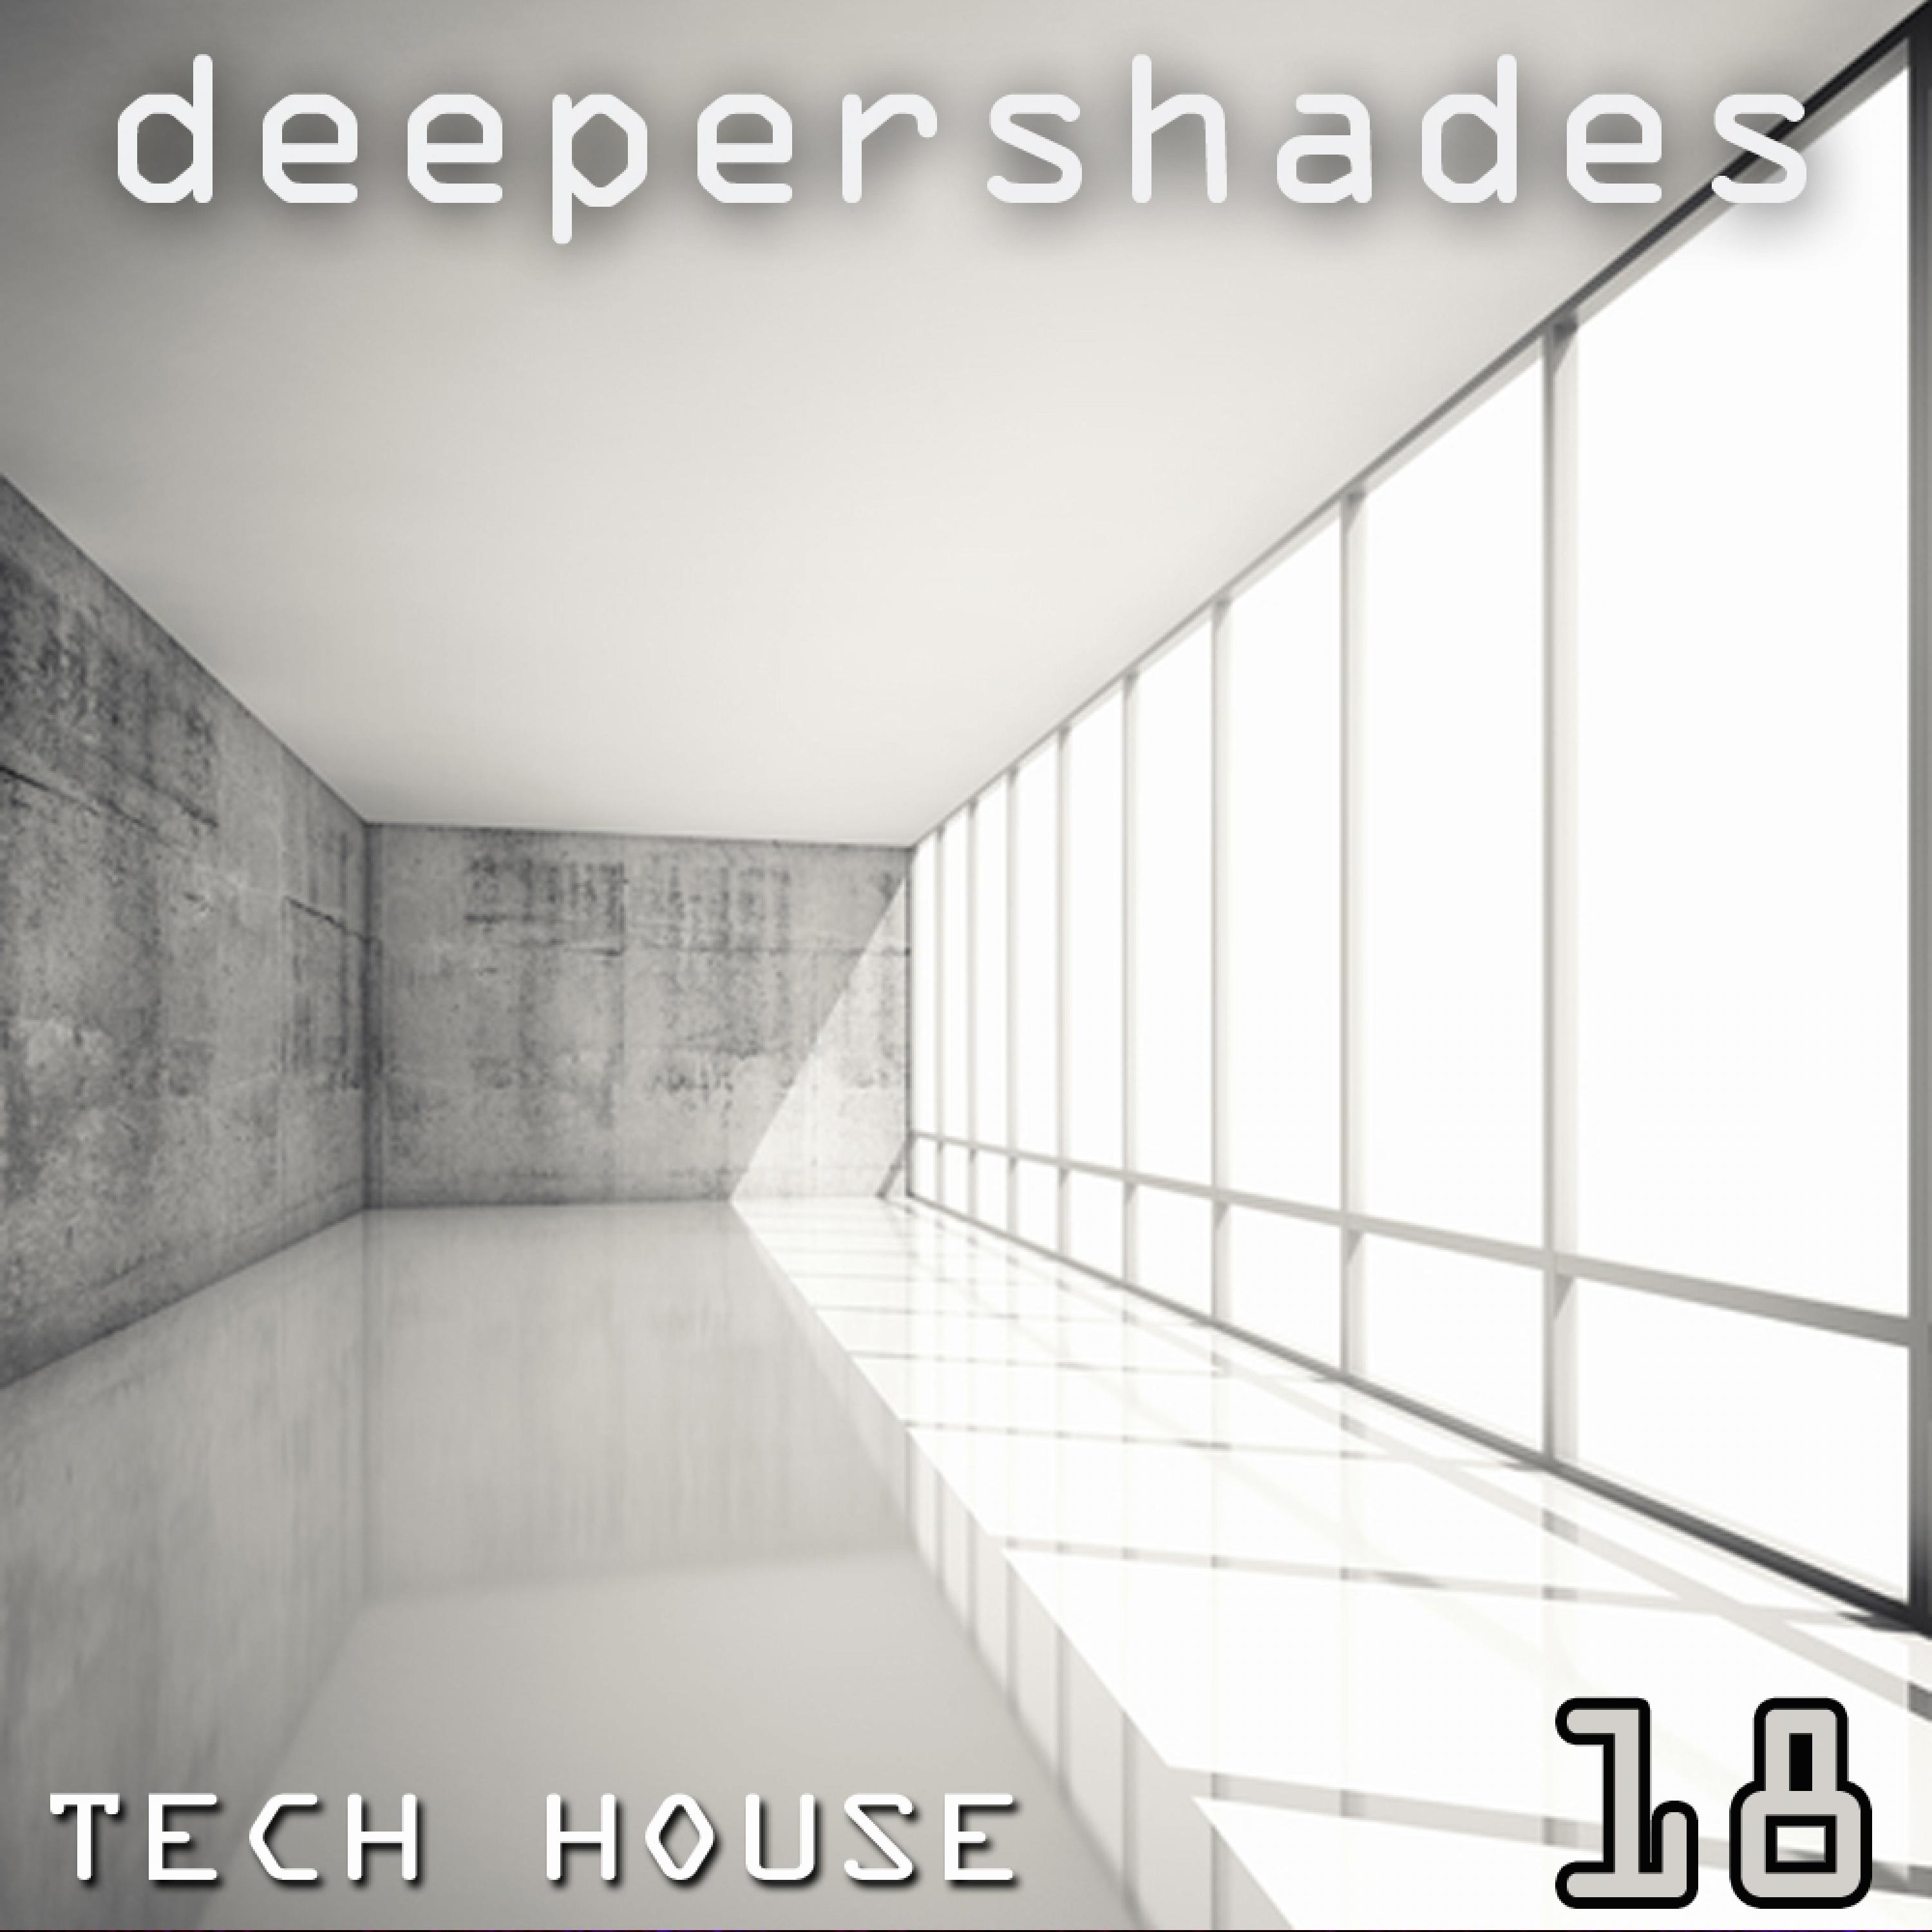 Deeper Shades Tech House 18